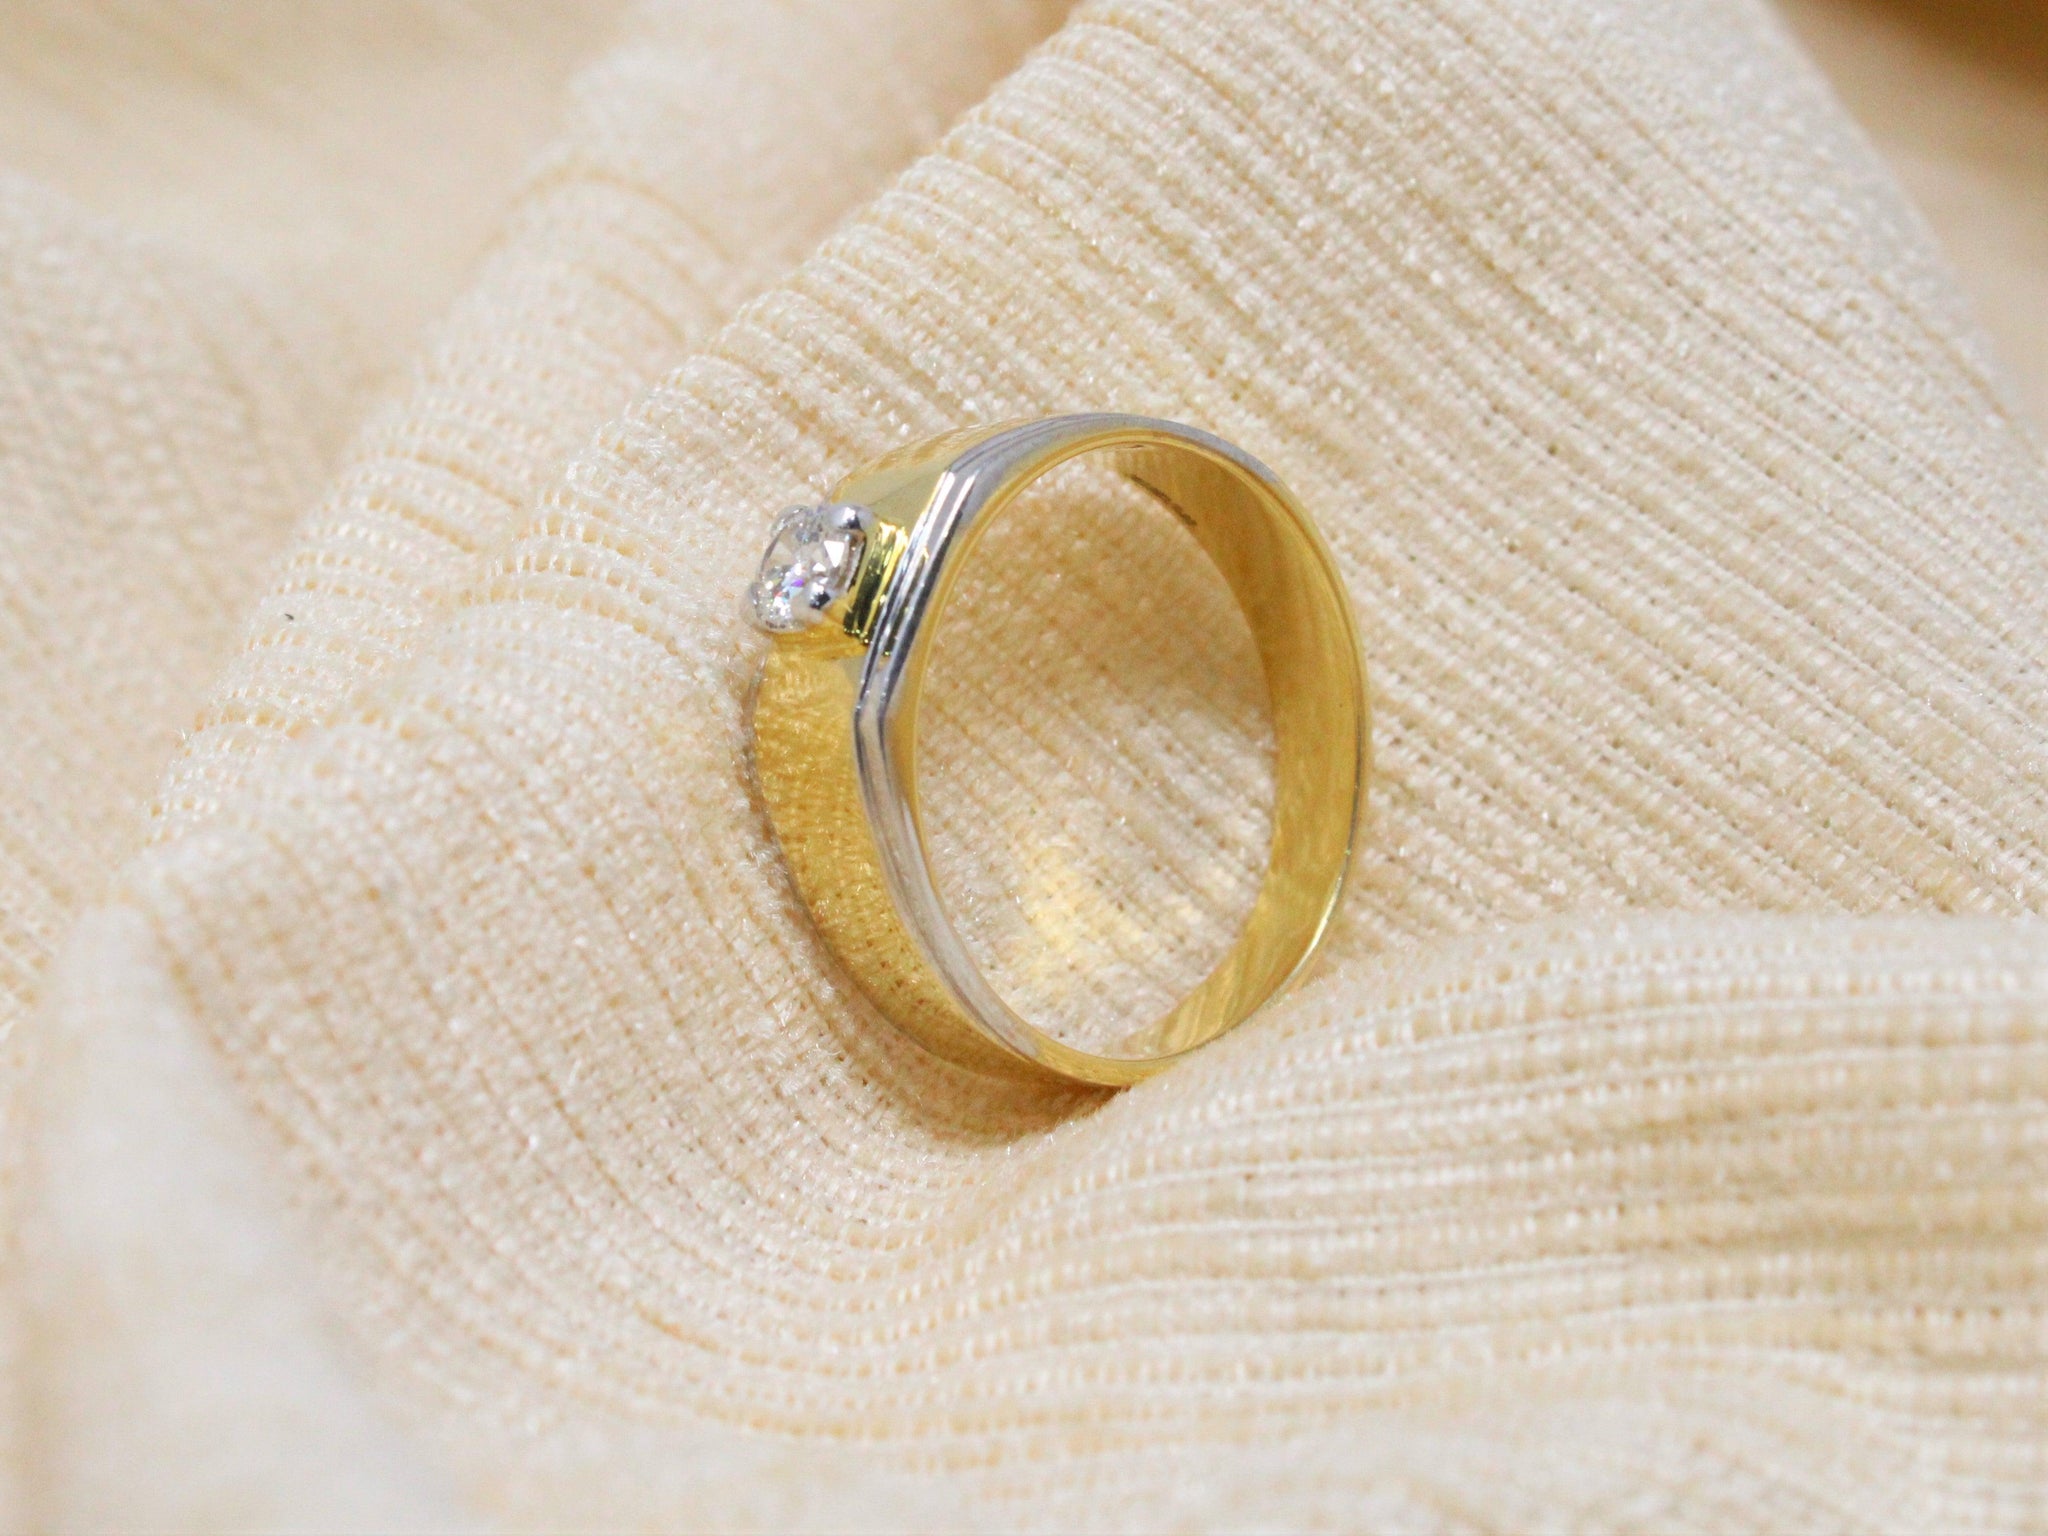 Single Stone Diamond Ring